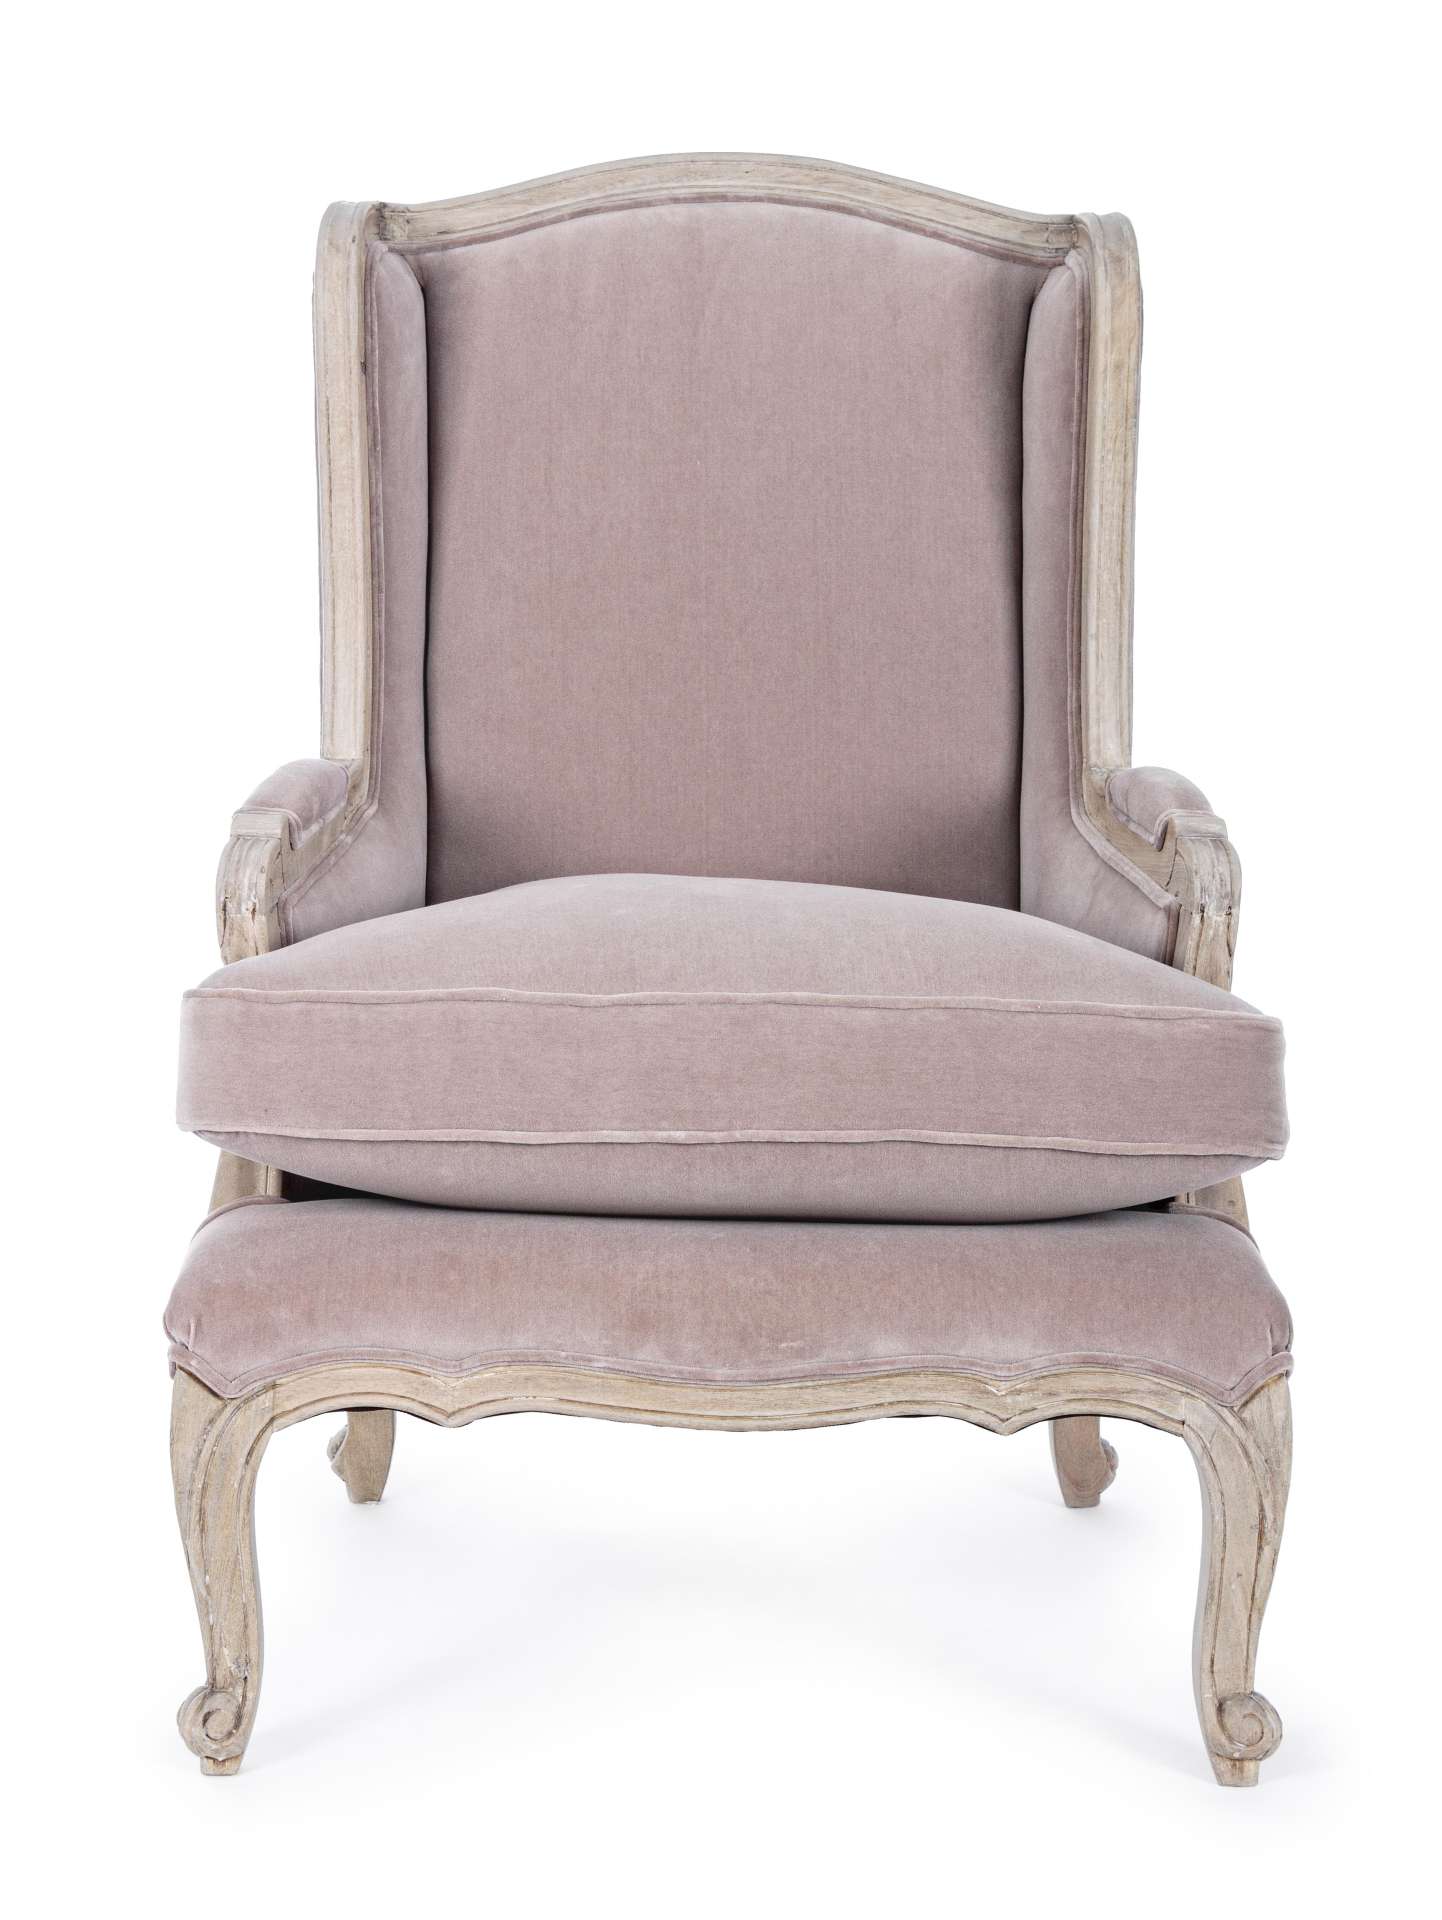 Der Sessel Lorelie überzeugt mit seinem klassischen Design. Gefertigt wurde er aus Stoff in Samt-Optik, welcher einen rosa Farbton besitzt. Das Gestell ist aus Mangoholz und hat eine natürliche Farbe. Der Sessel besitzt eine Sitzhöhe von 53 cm. Die Breite